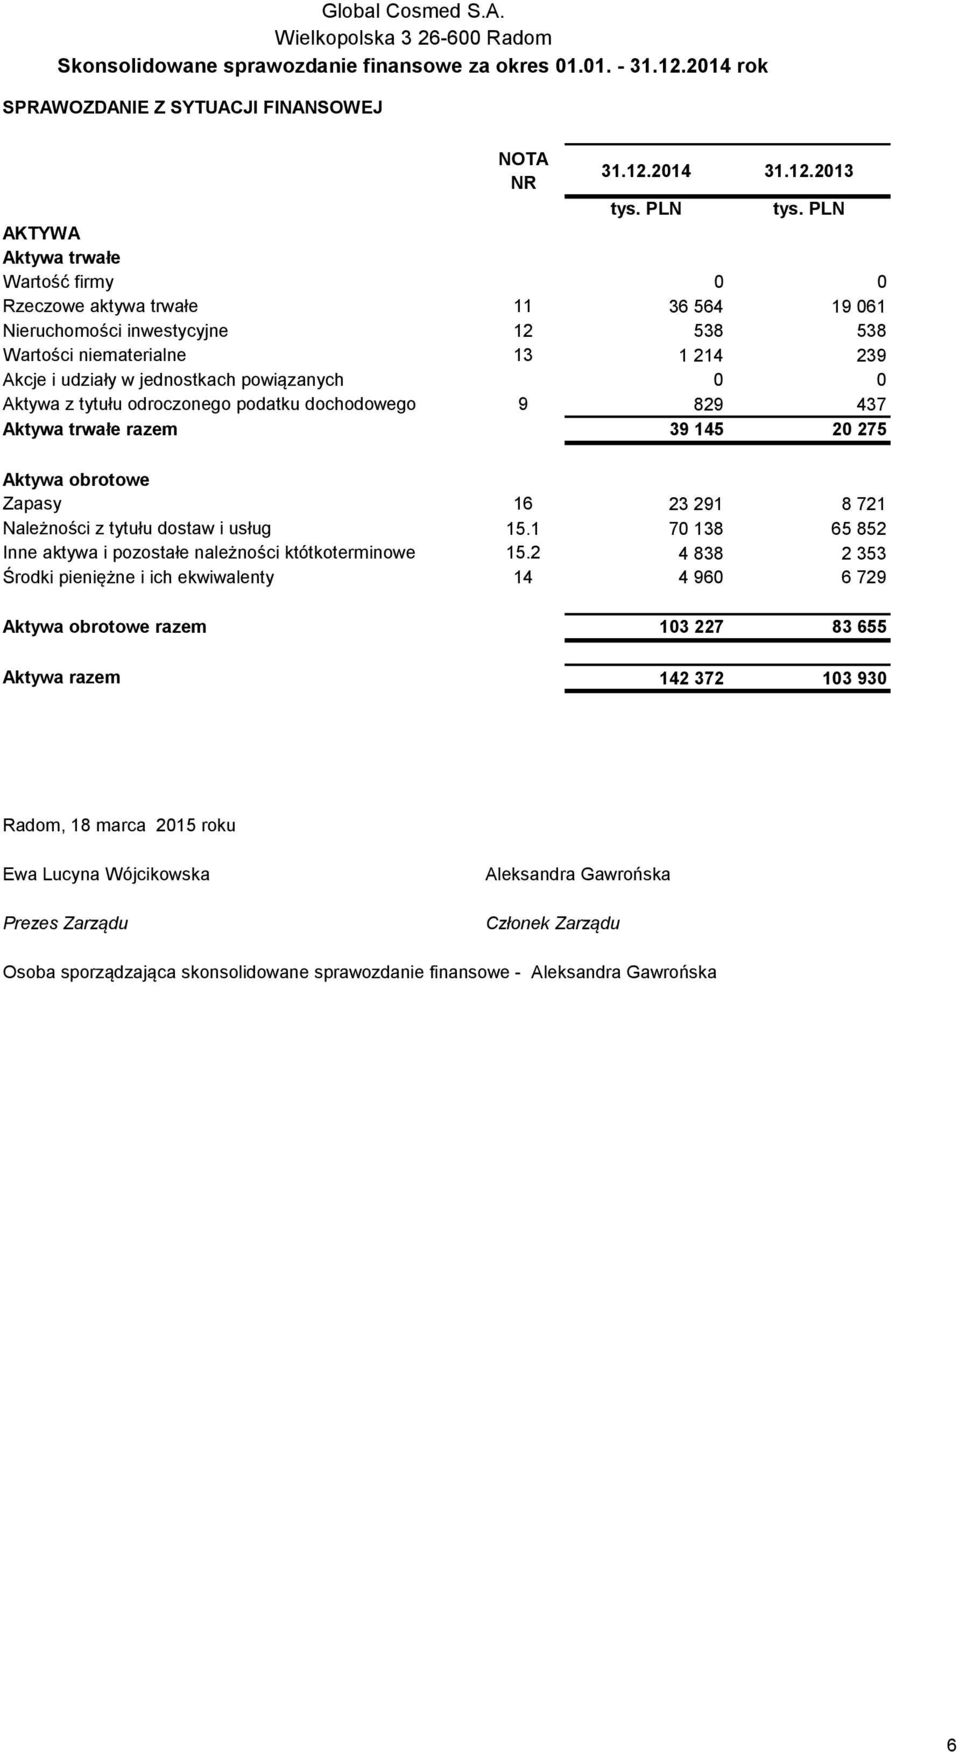 2013 AKTYWA Aktywa trwałe Wartość firmy 0 0 Rzeczowe aktywa trwałe 11 36 564 19 061 Nieruchomości inwestycyjne 12 538 538 Wartości niematerialne 13 1 214 239 Akcje i udziały w jednostkach powiązanych